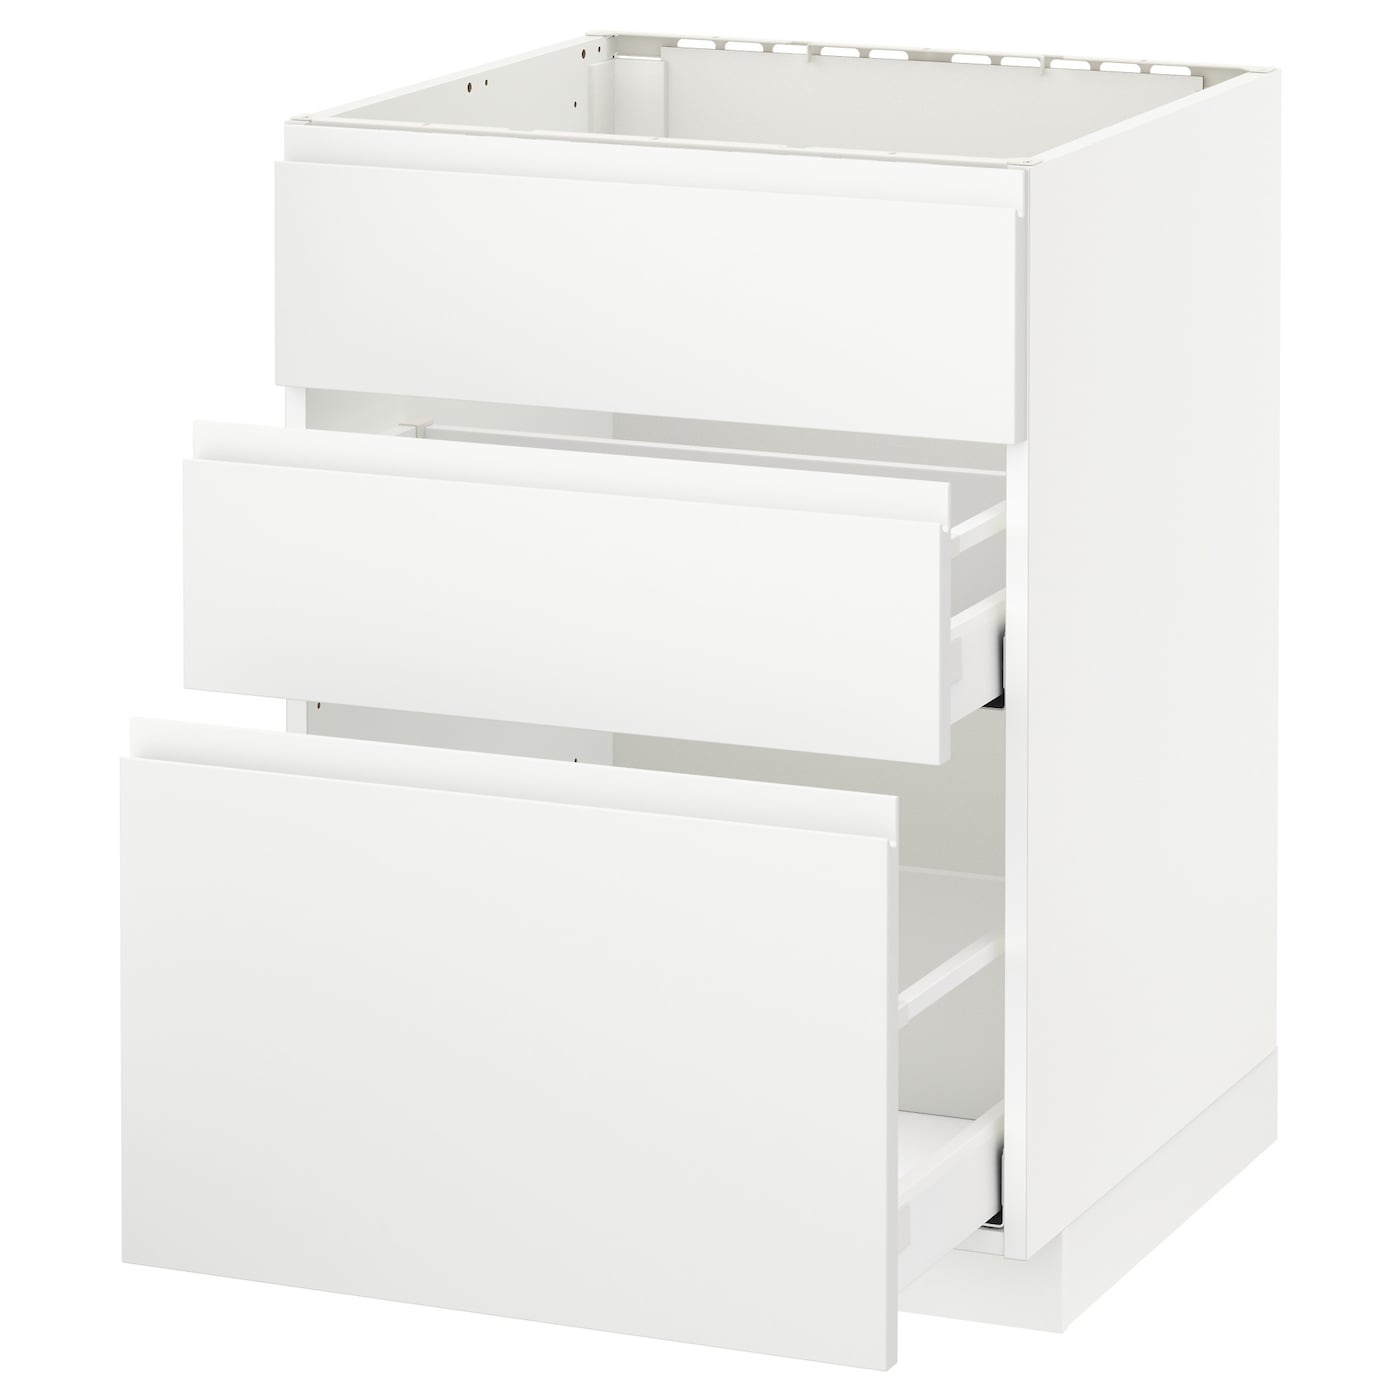 Напольный кухонный шкаф  - IKEA METOD MAXIMERA, 88x62,1x60см, белый, МЕТОД МАКСИМЕРА ИКЕА